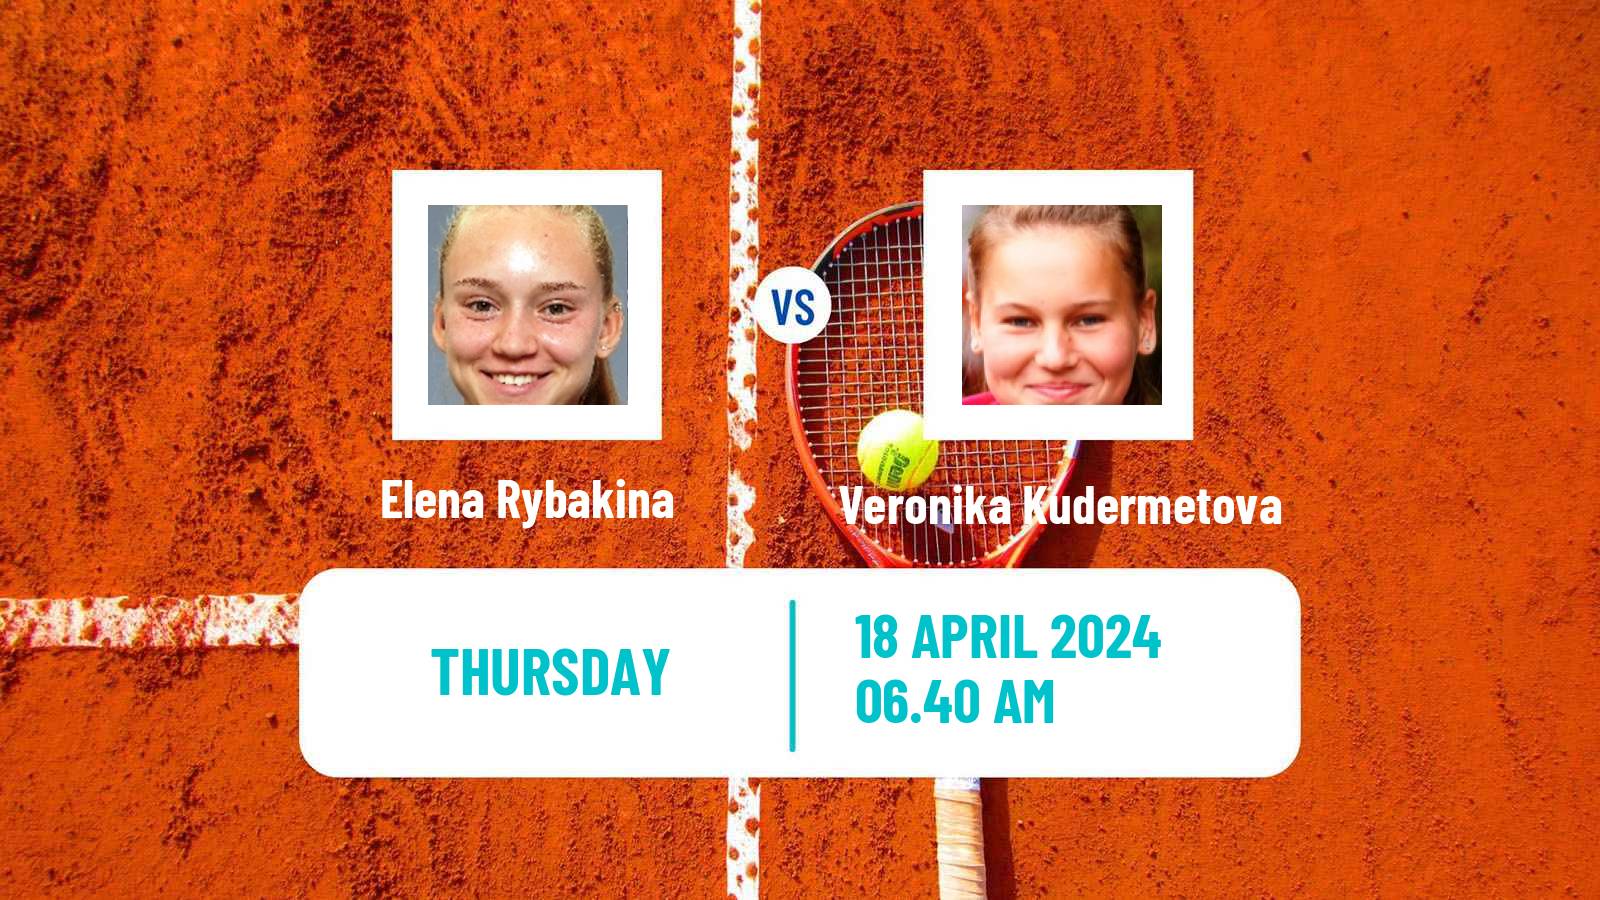 Tennis WTA Stuttgart Elena Rybakina - Veronika Kudermetova